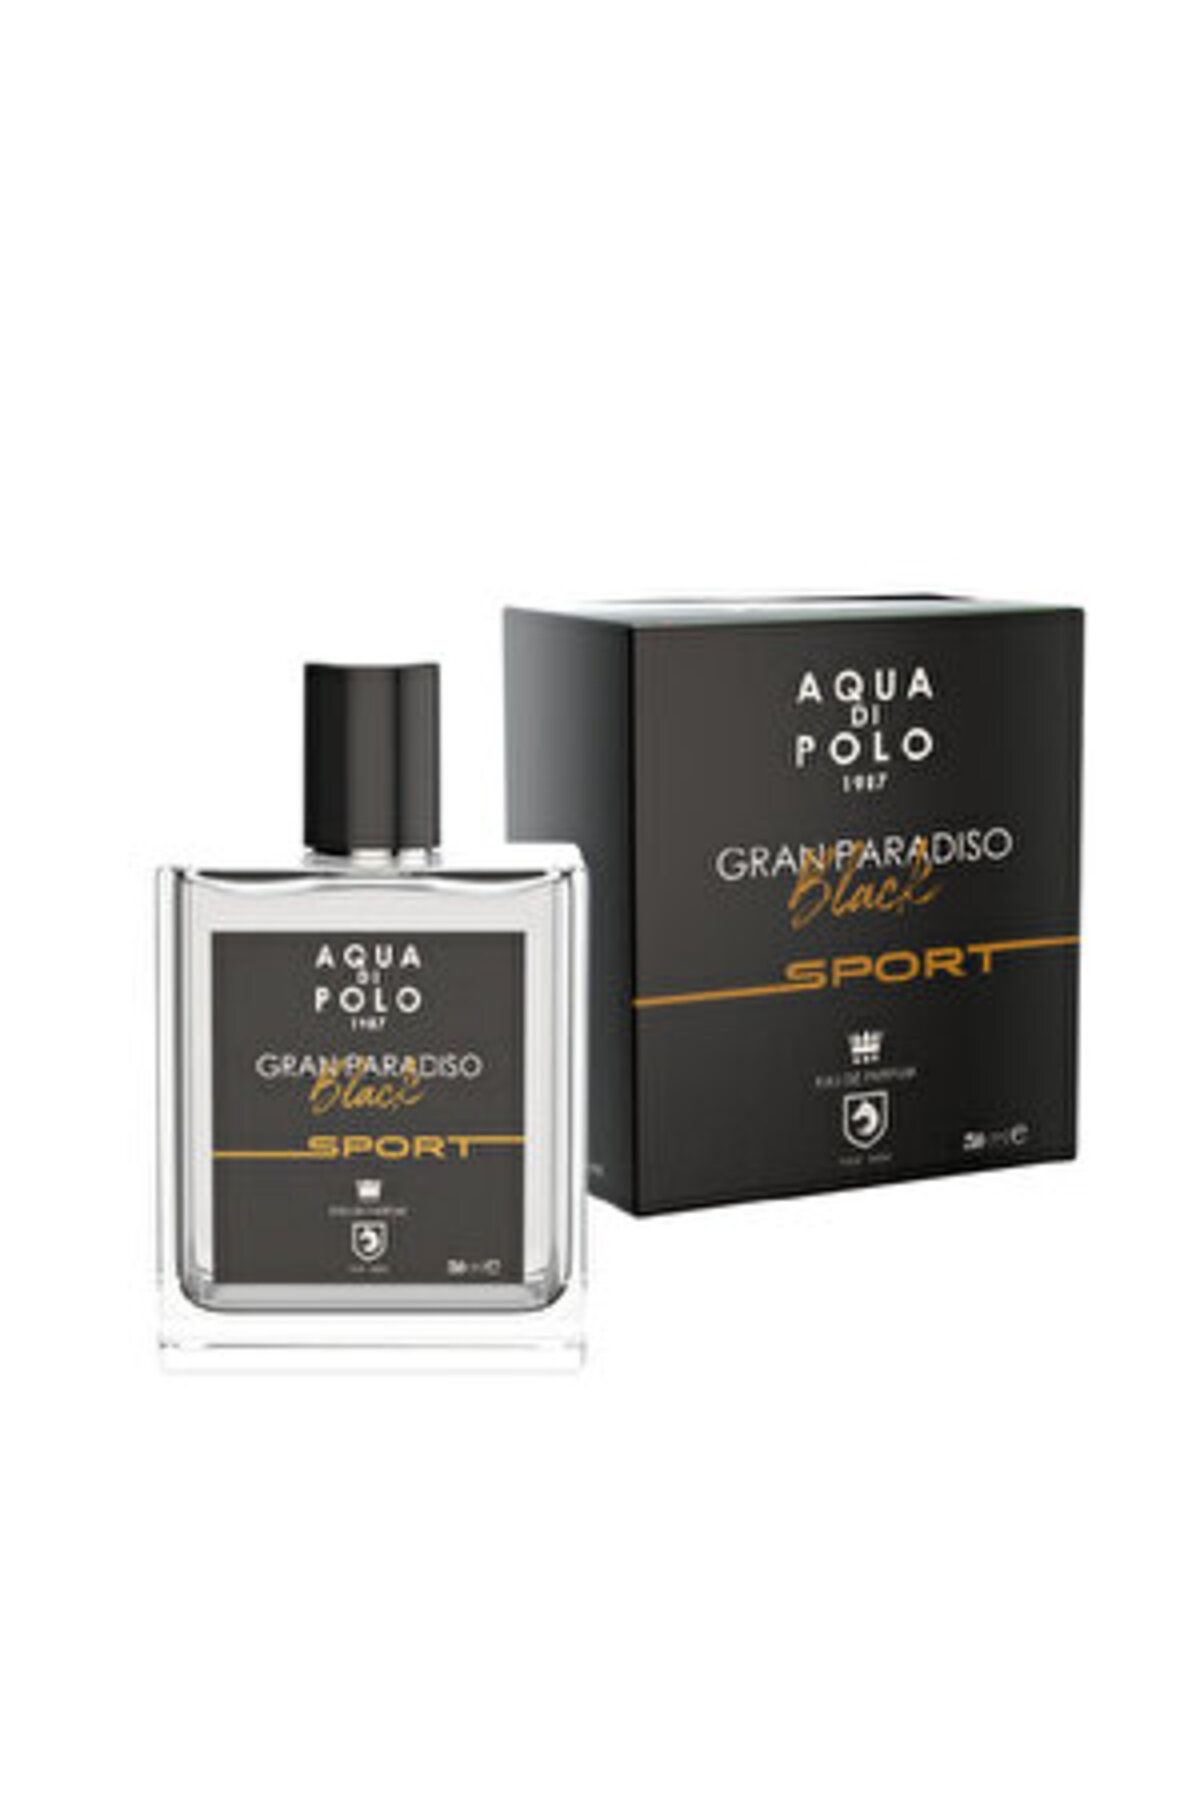 Aqua ( KÜÇÜK KOLONYA HEDİYE ) Aqua di Polo 1987 Gran Paradiso Black Sport EDP Erkek Parfüm 50 ml